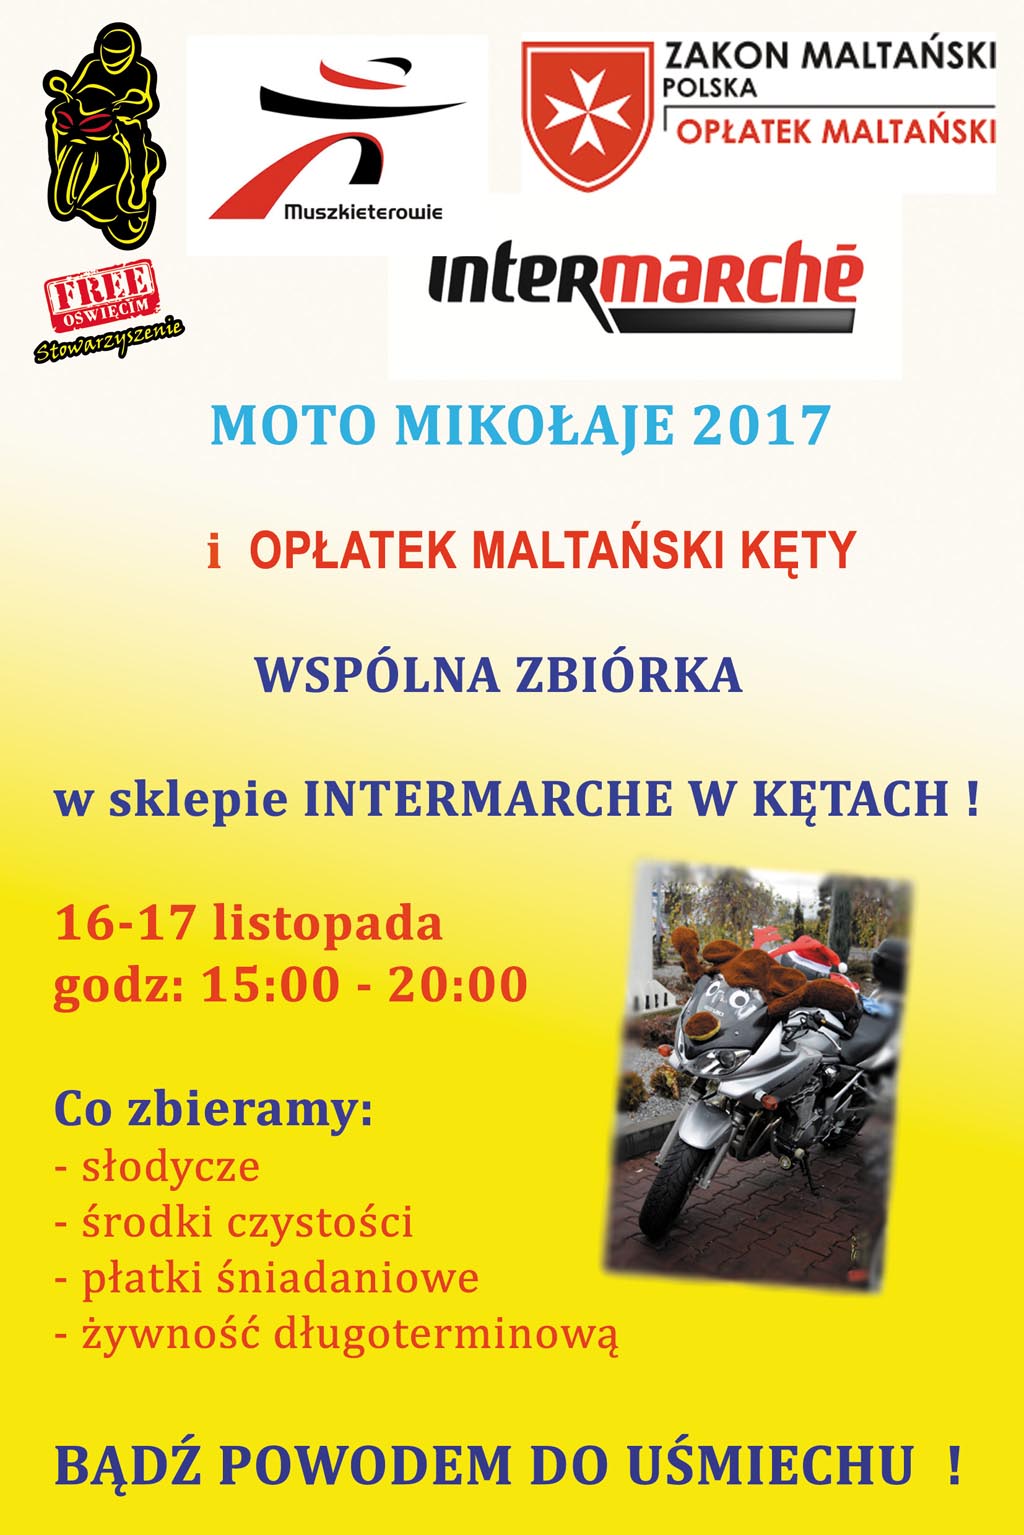 Motocykliści ze Stowarzyszenia „Free Oświęcim” organizują kolejną zbiórkę mikołajowa na rzecz dzieci. „Moto Mikołajom” patronują Fakty Oświęcim.